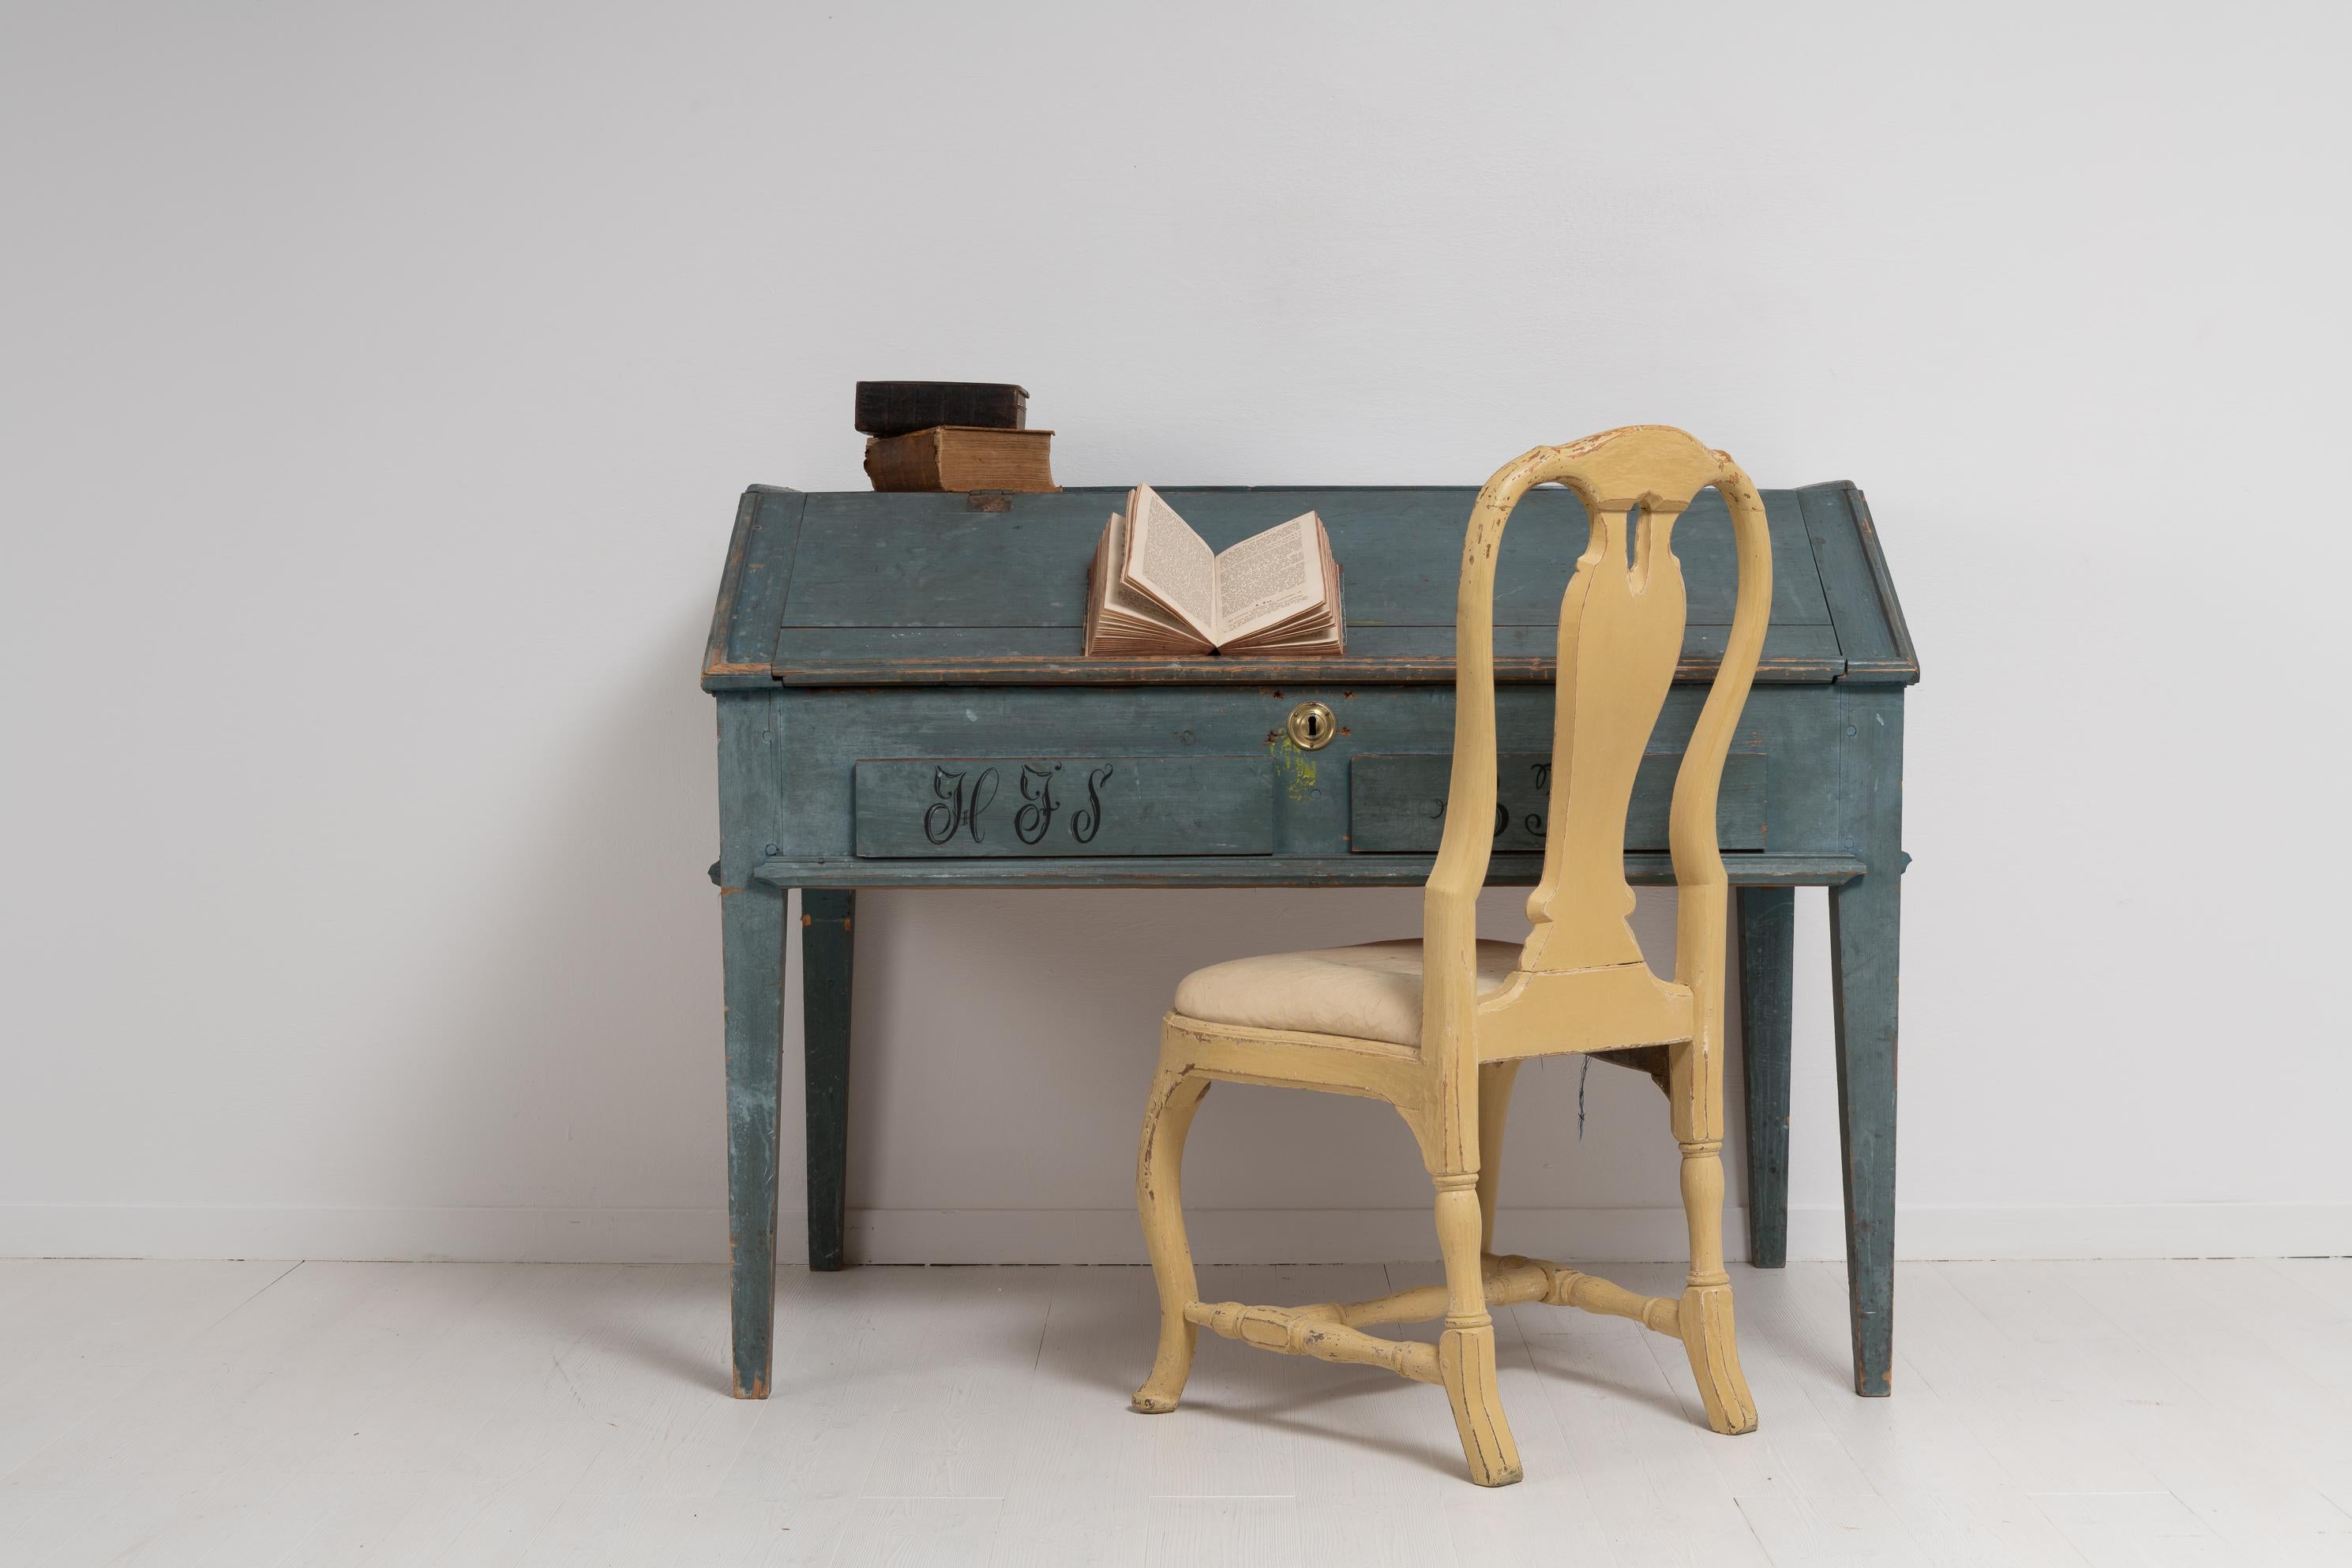 Antiker Schreibtisch aus echter Kiefer aus Schweden mit blauer Farbe. Der Tisch befindet sich in unberührtem Originalzustand mit der ursprünglichen blauen Farbe. Datiert 1850 und schwarz monogrammiert. Der Schreibtisch verfügt über einen Innenraum